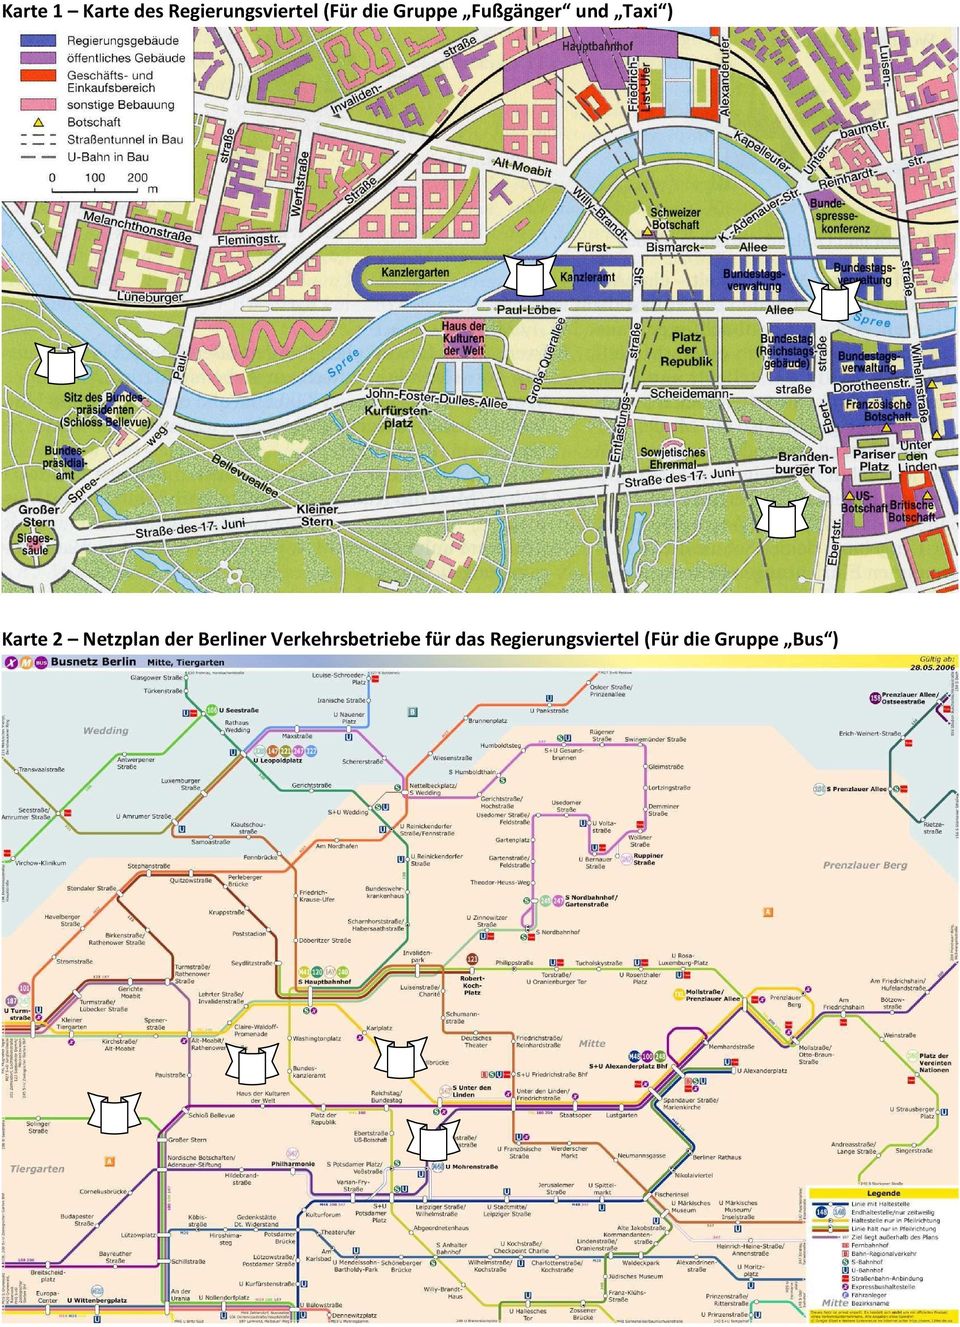 Netzplan der Berliner Verkehrsbetriebe